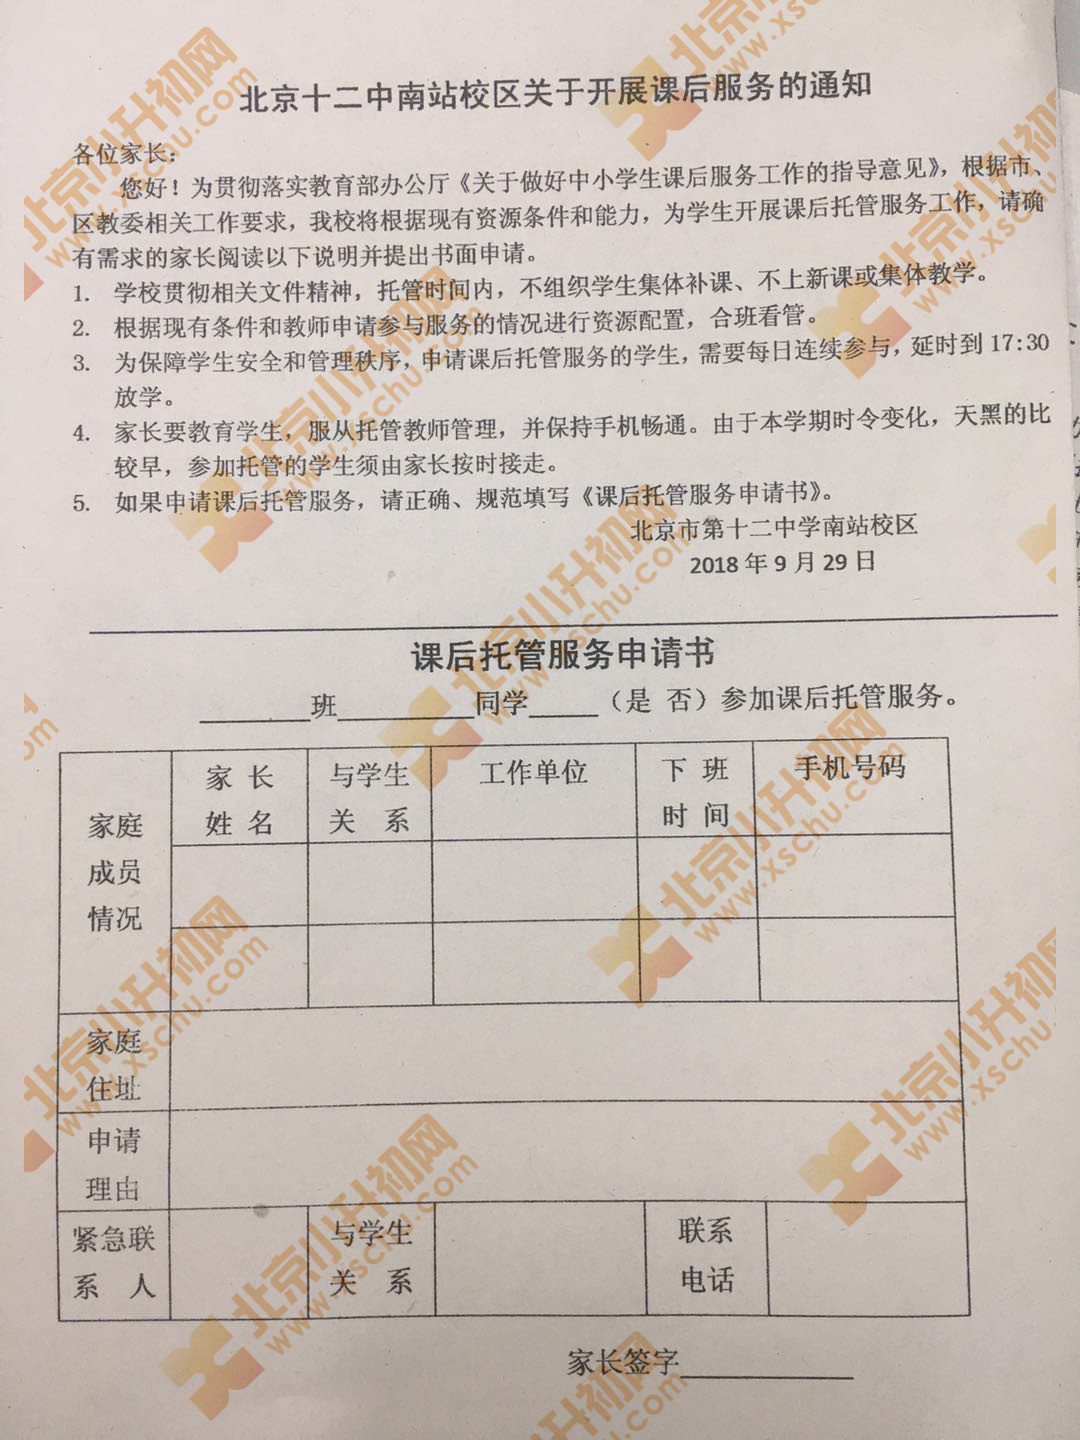 北京十二中学南站校区关于开展课后服务通知